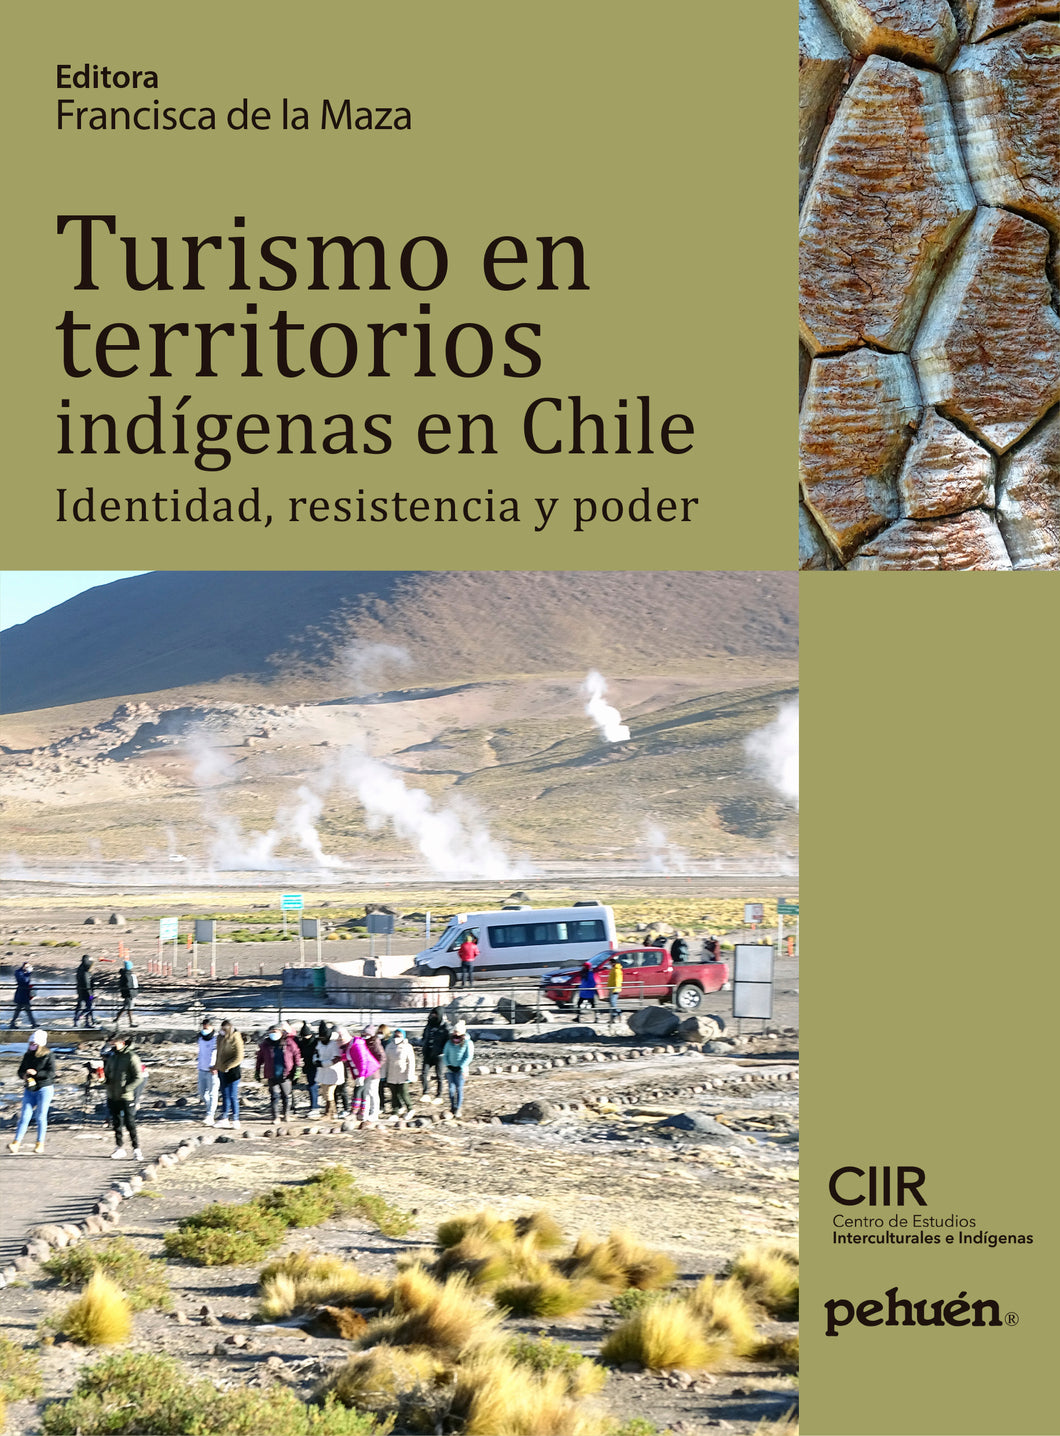 Turismo en territorios indígenas en Chile. Identidad, resistencia y poder